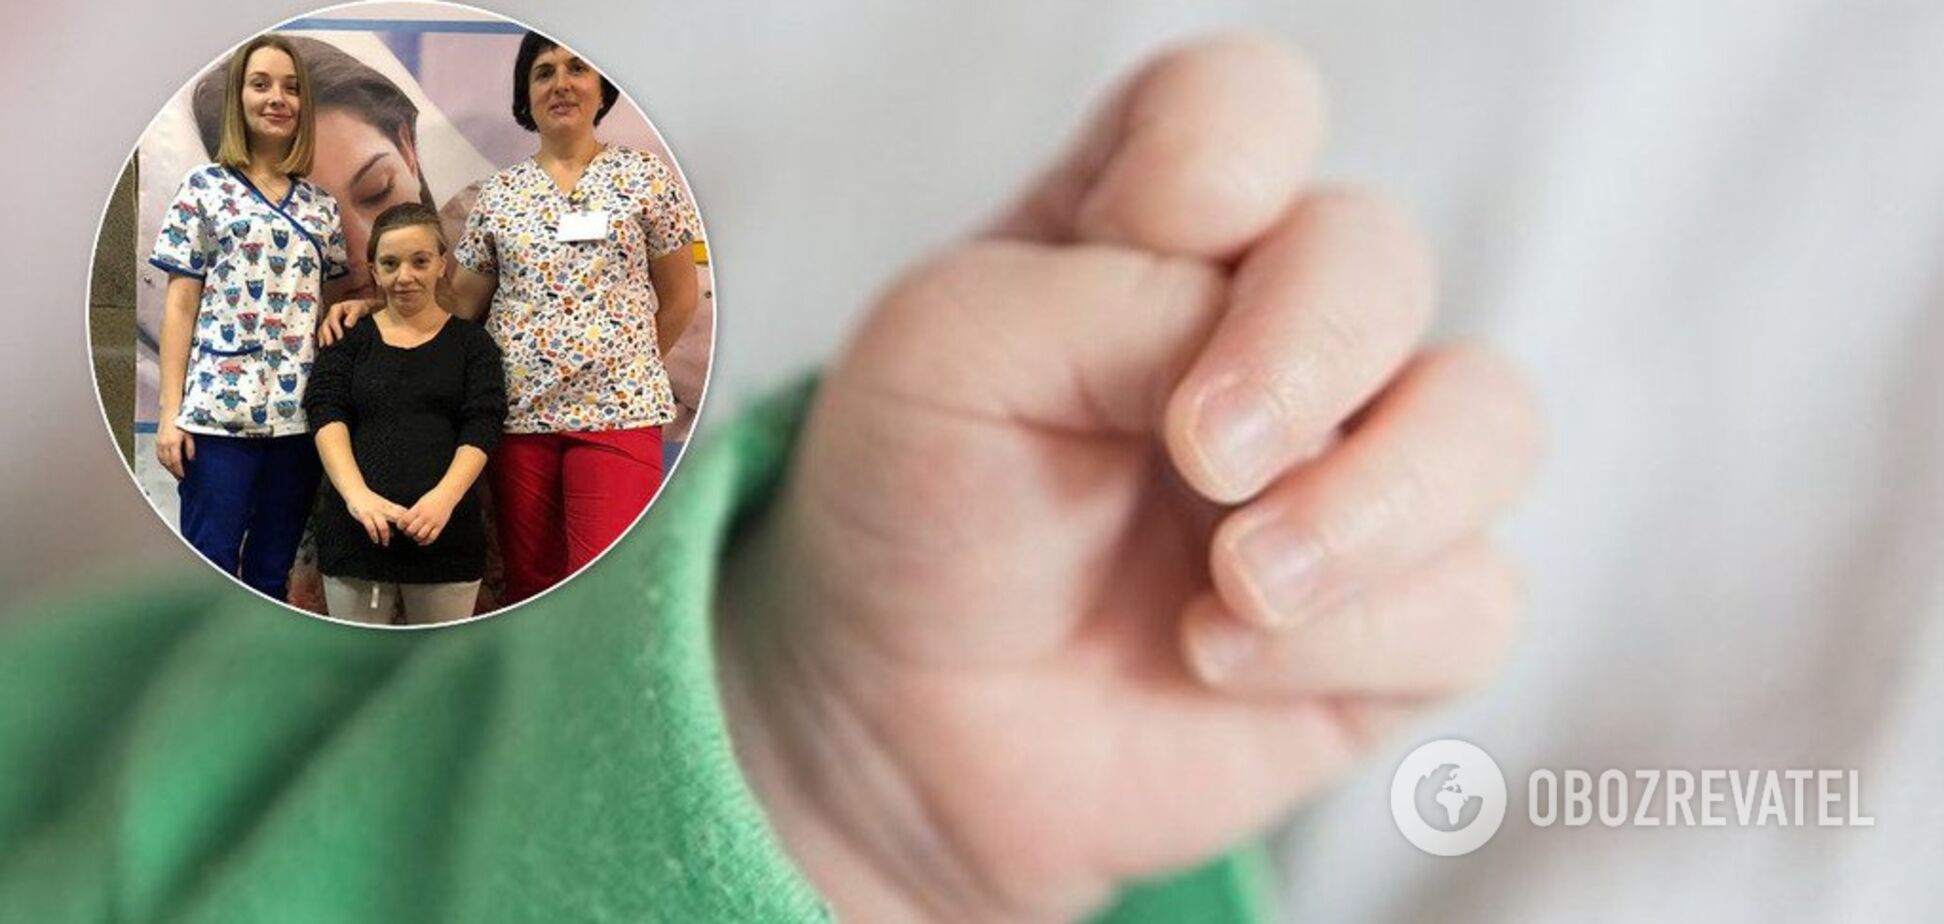 В Днепре женщина с уникальным заболеванием родила здорового ребенка: трогательные фото